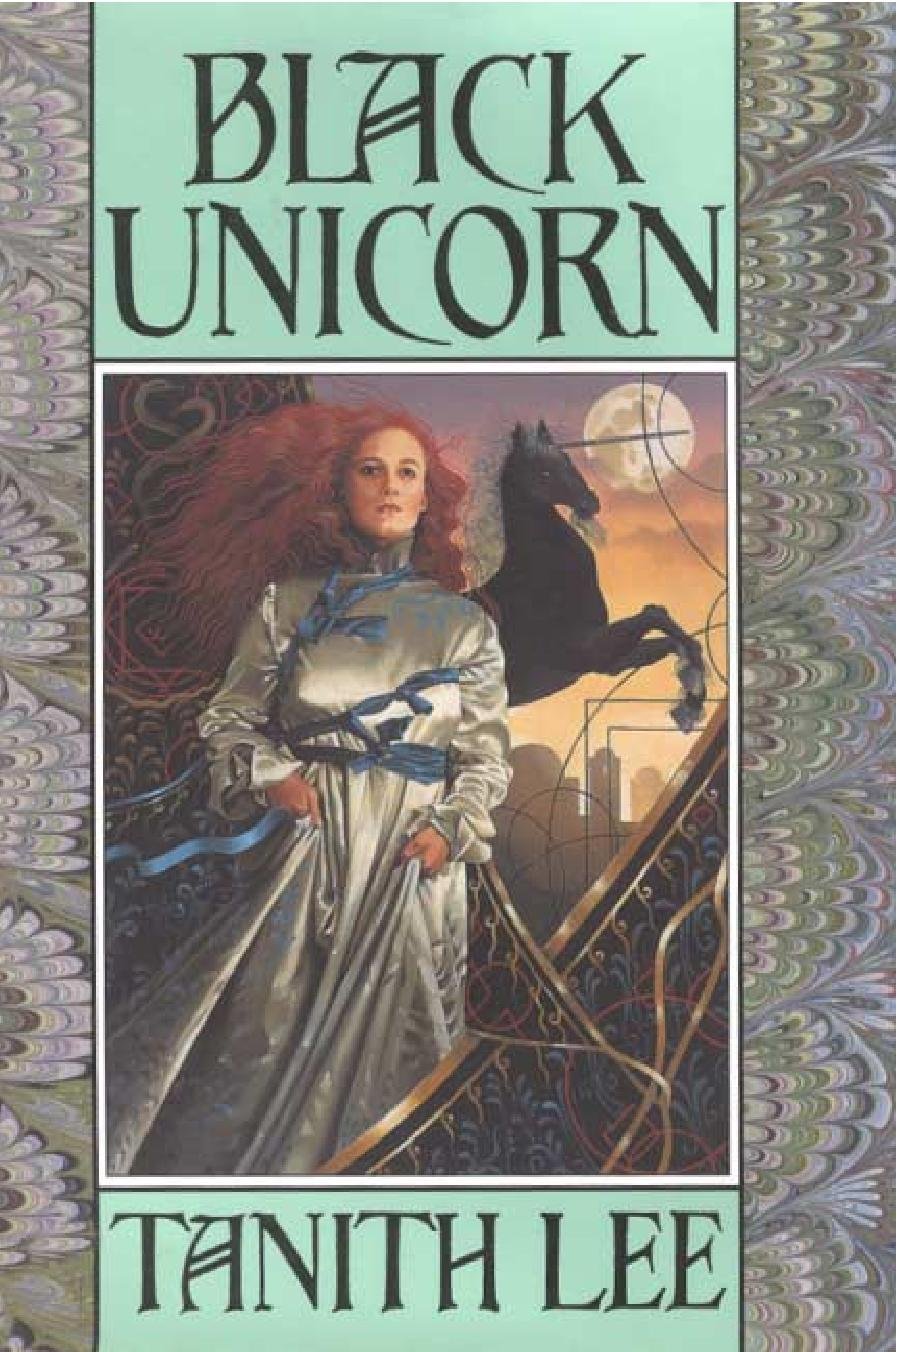 books about unicorns1